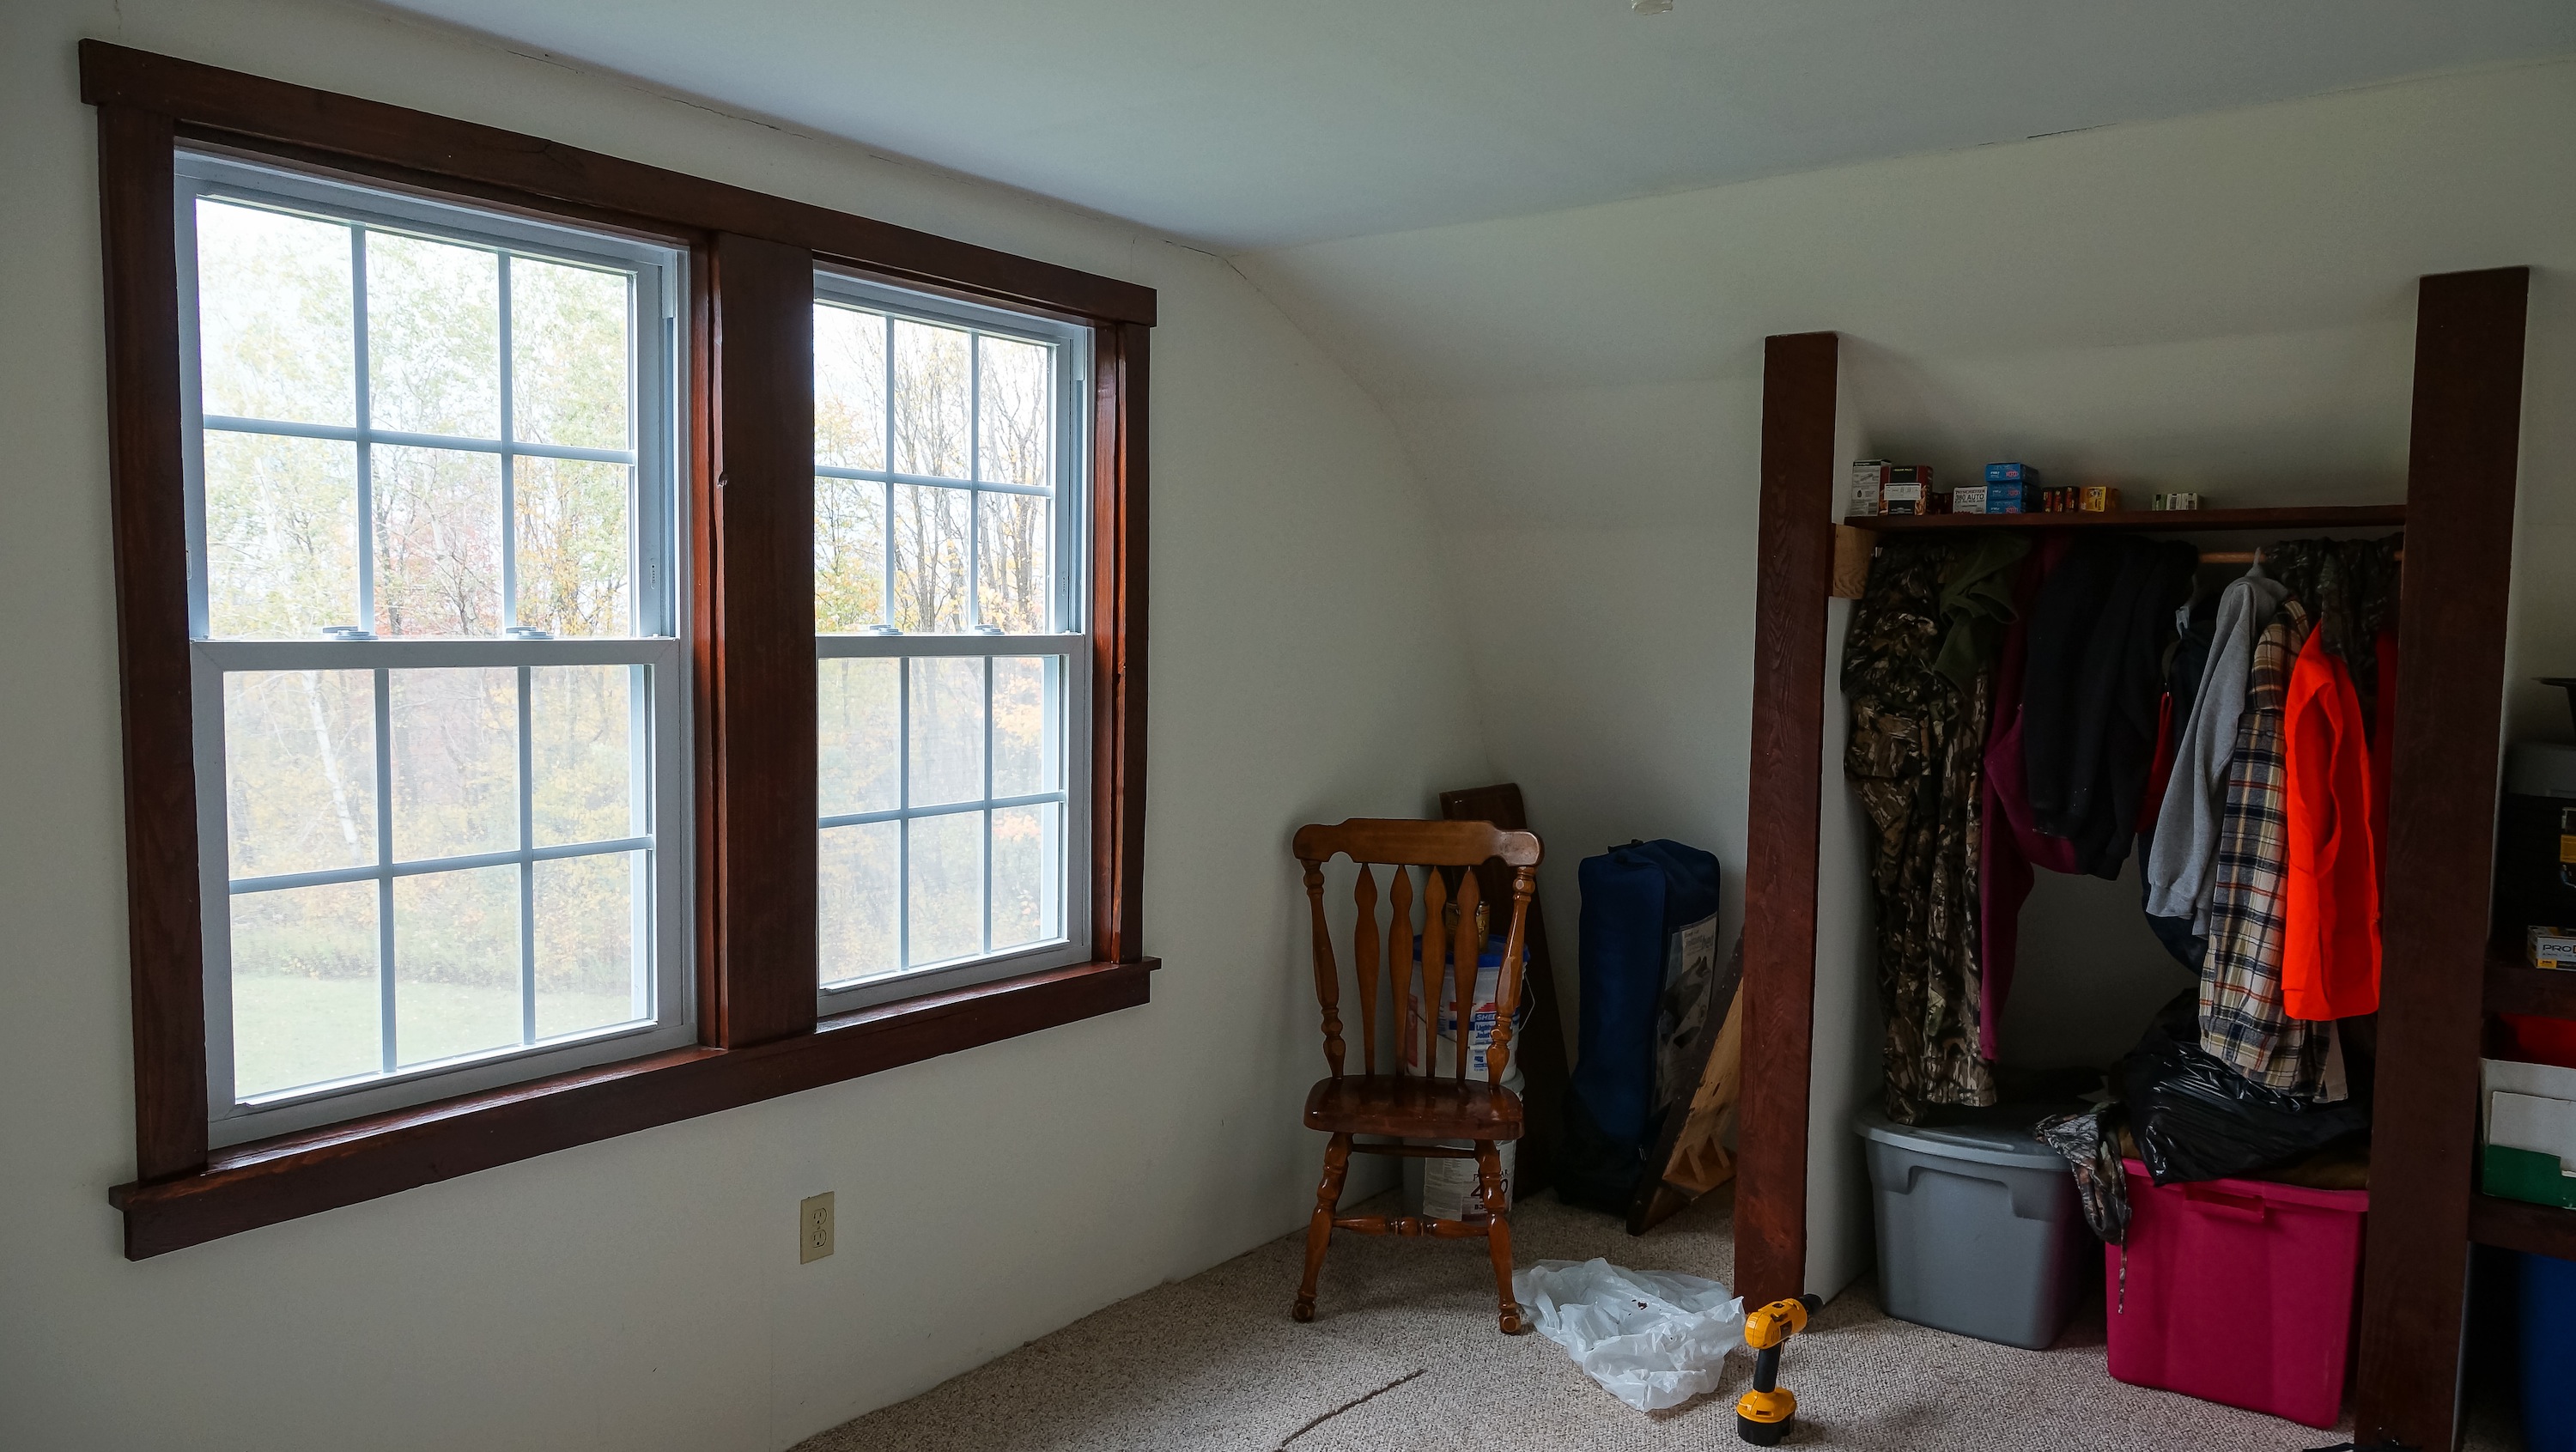 Window trimmed in master bedroom